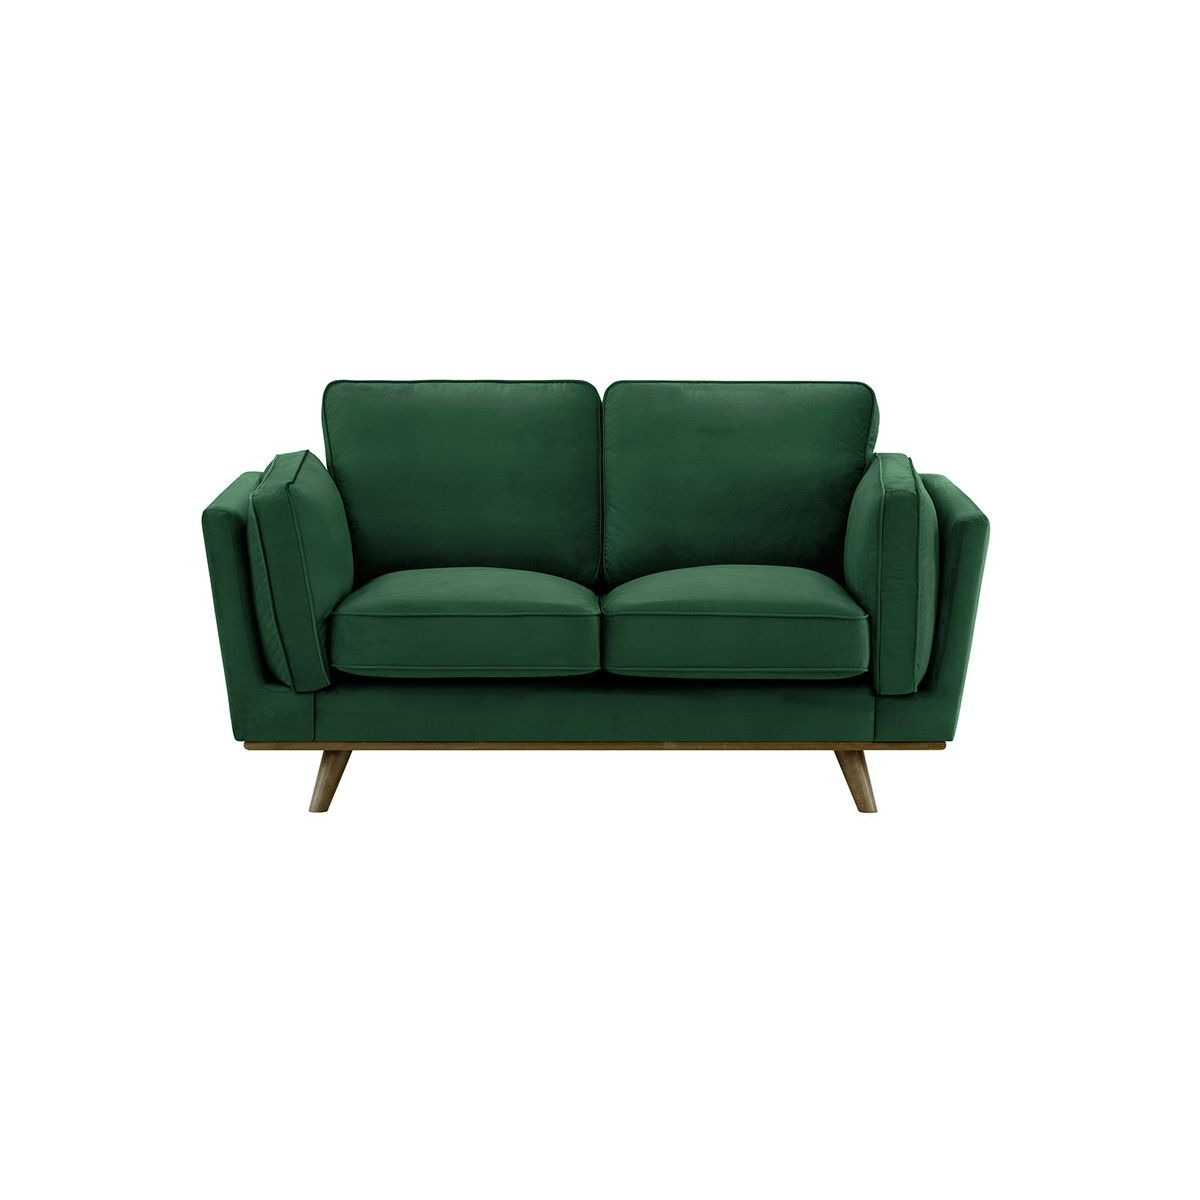 Gabrielle 2 Seater Sofa, dark green, Leg colour: wax black - image 1